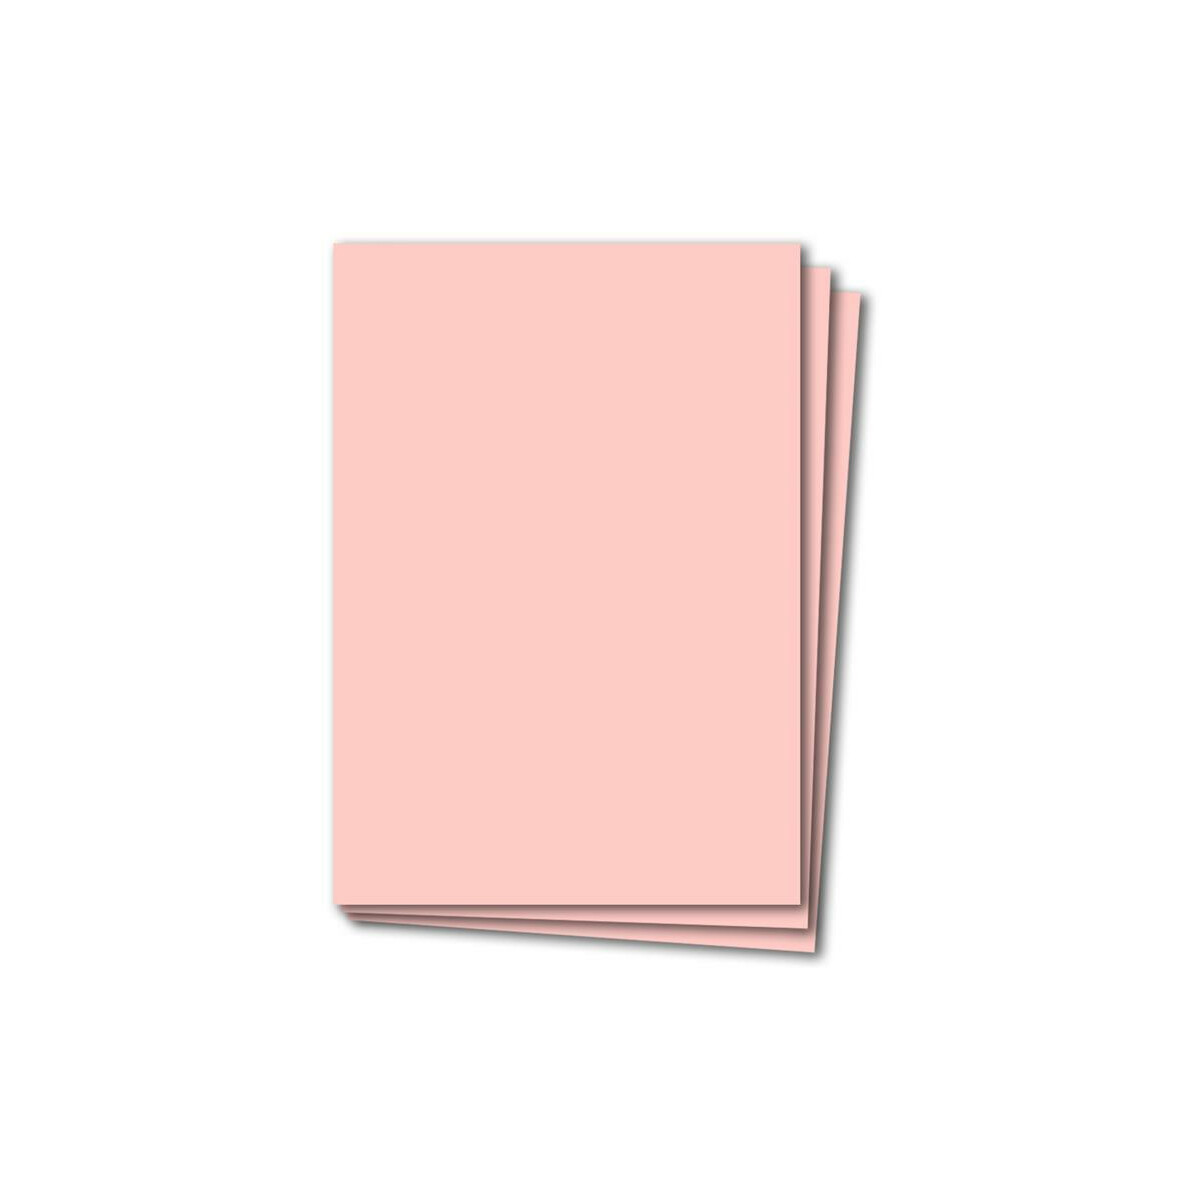 Diplome zum Zeichnen ideal für Einladungen 100 Blatt Rosa 220g Tonkarton einseitig strukturiert DIN A4 210x297 mm Prisma Rosa Visitenkarten Basteln und Dekorieren 